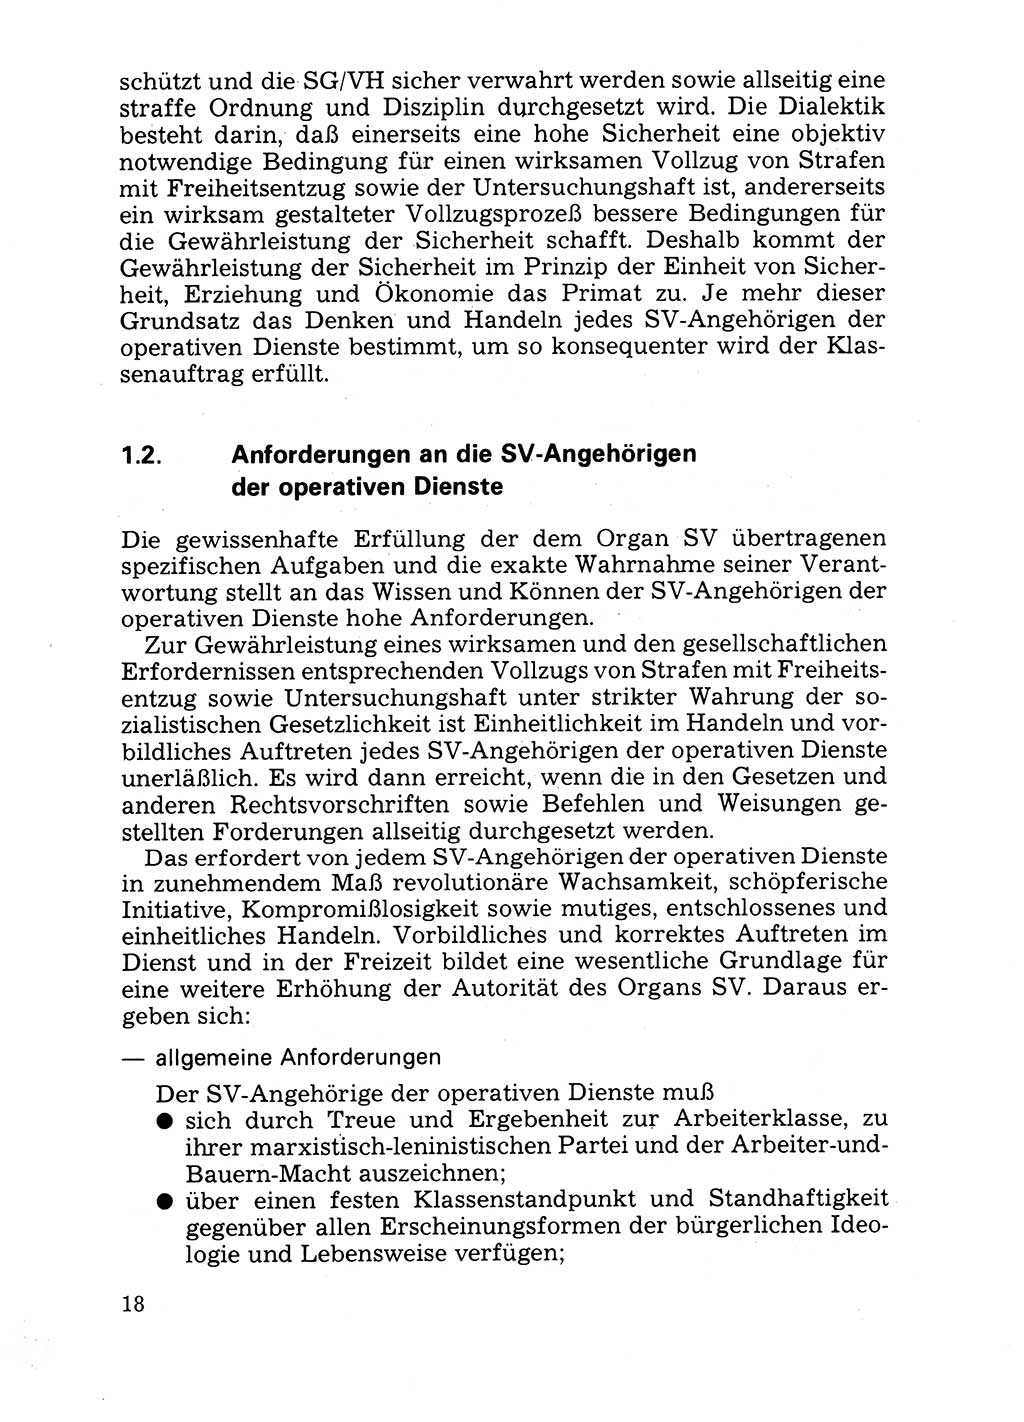 Handbuch für operative Dienste, Abteilung Strafvollzug (SV) [Ministerium des Innern (MdI) Deutsche Demokratische Republik (DDR)] 1981, Seite 18 (Hb. op. D. Abt. SV MdI DDR 1981, S. 18)